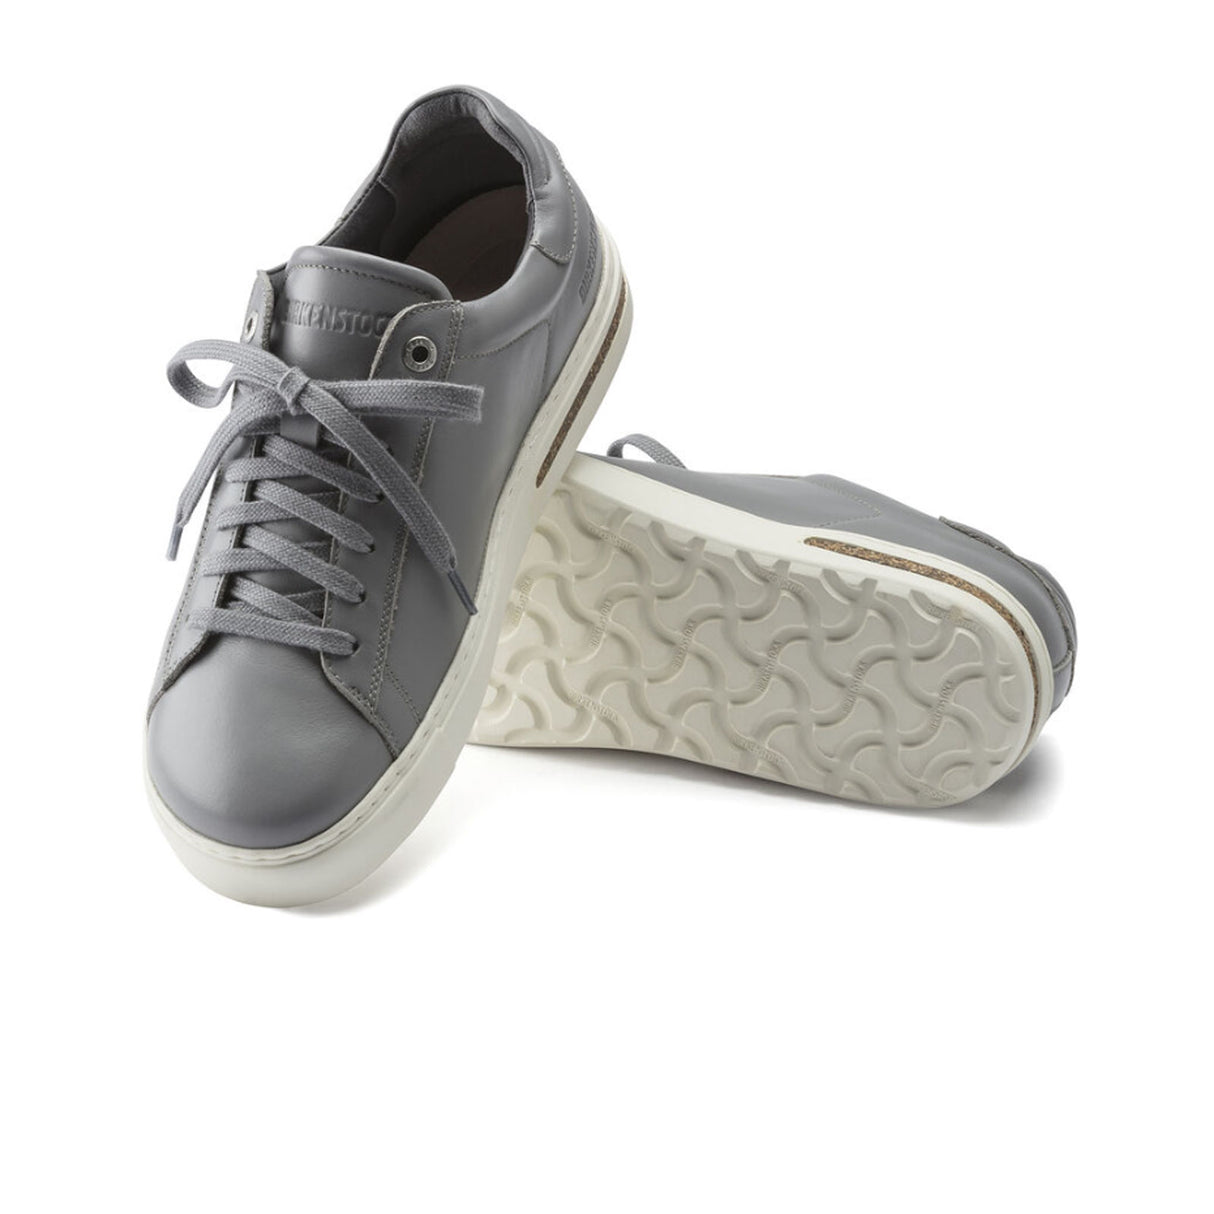 Birkenstock Bend Low Narrow Sneaker (Women) - Gray Leather Dress-Casual - Sneakers - The Heel Shoe Fitters